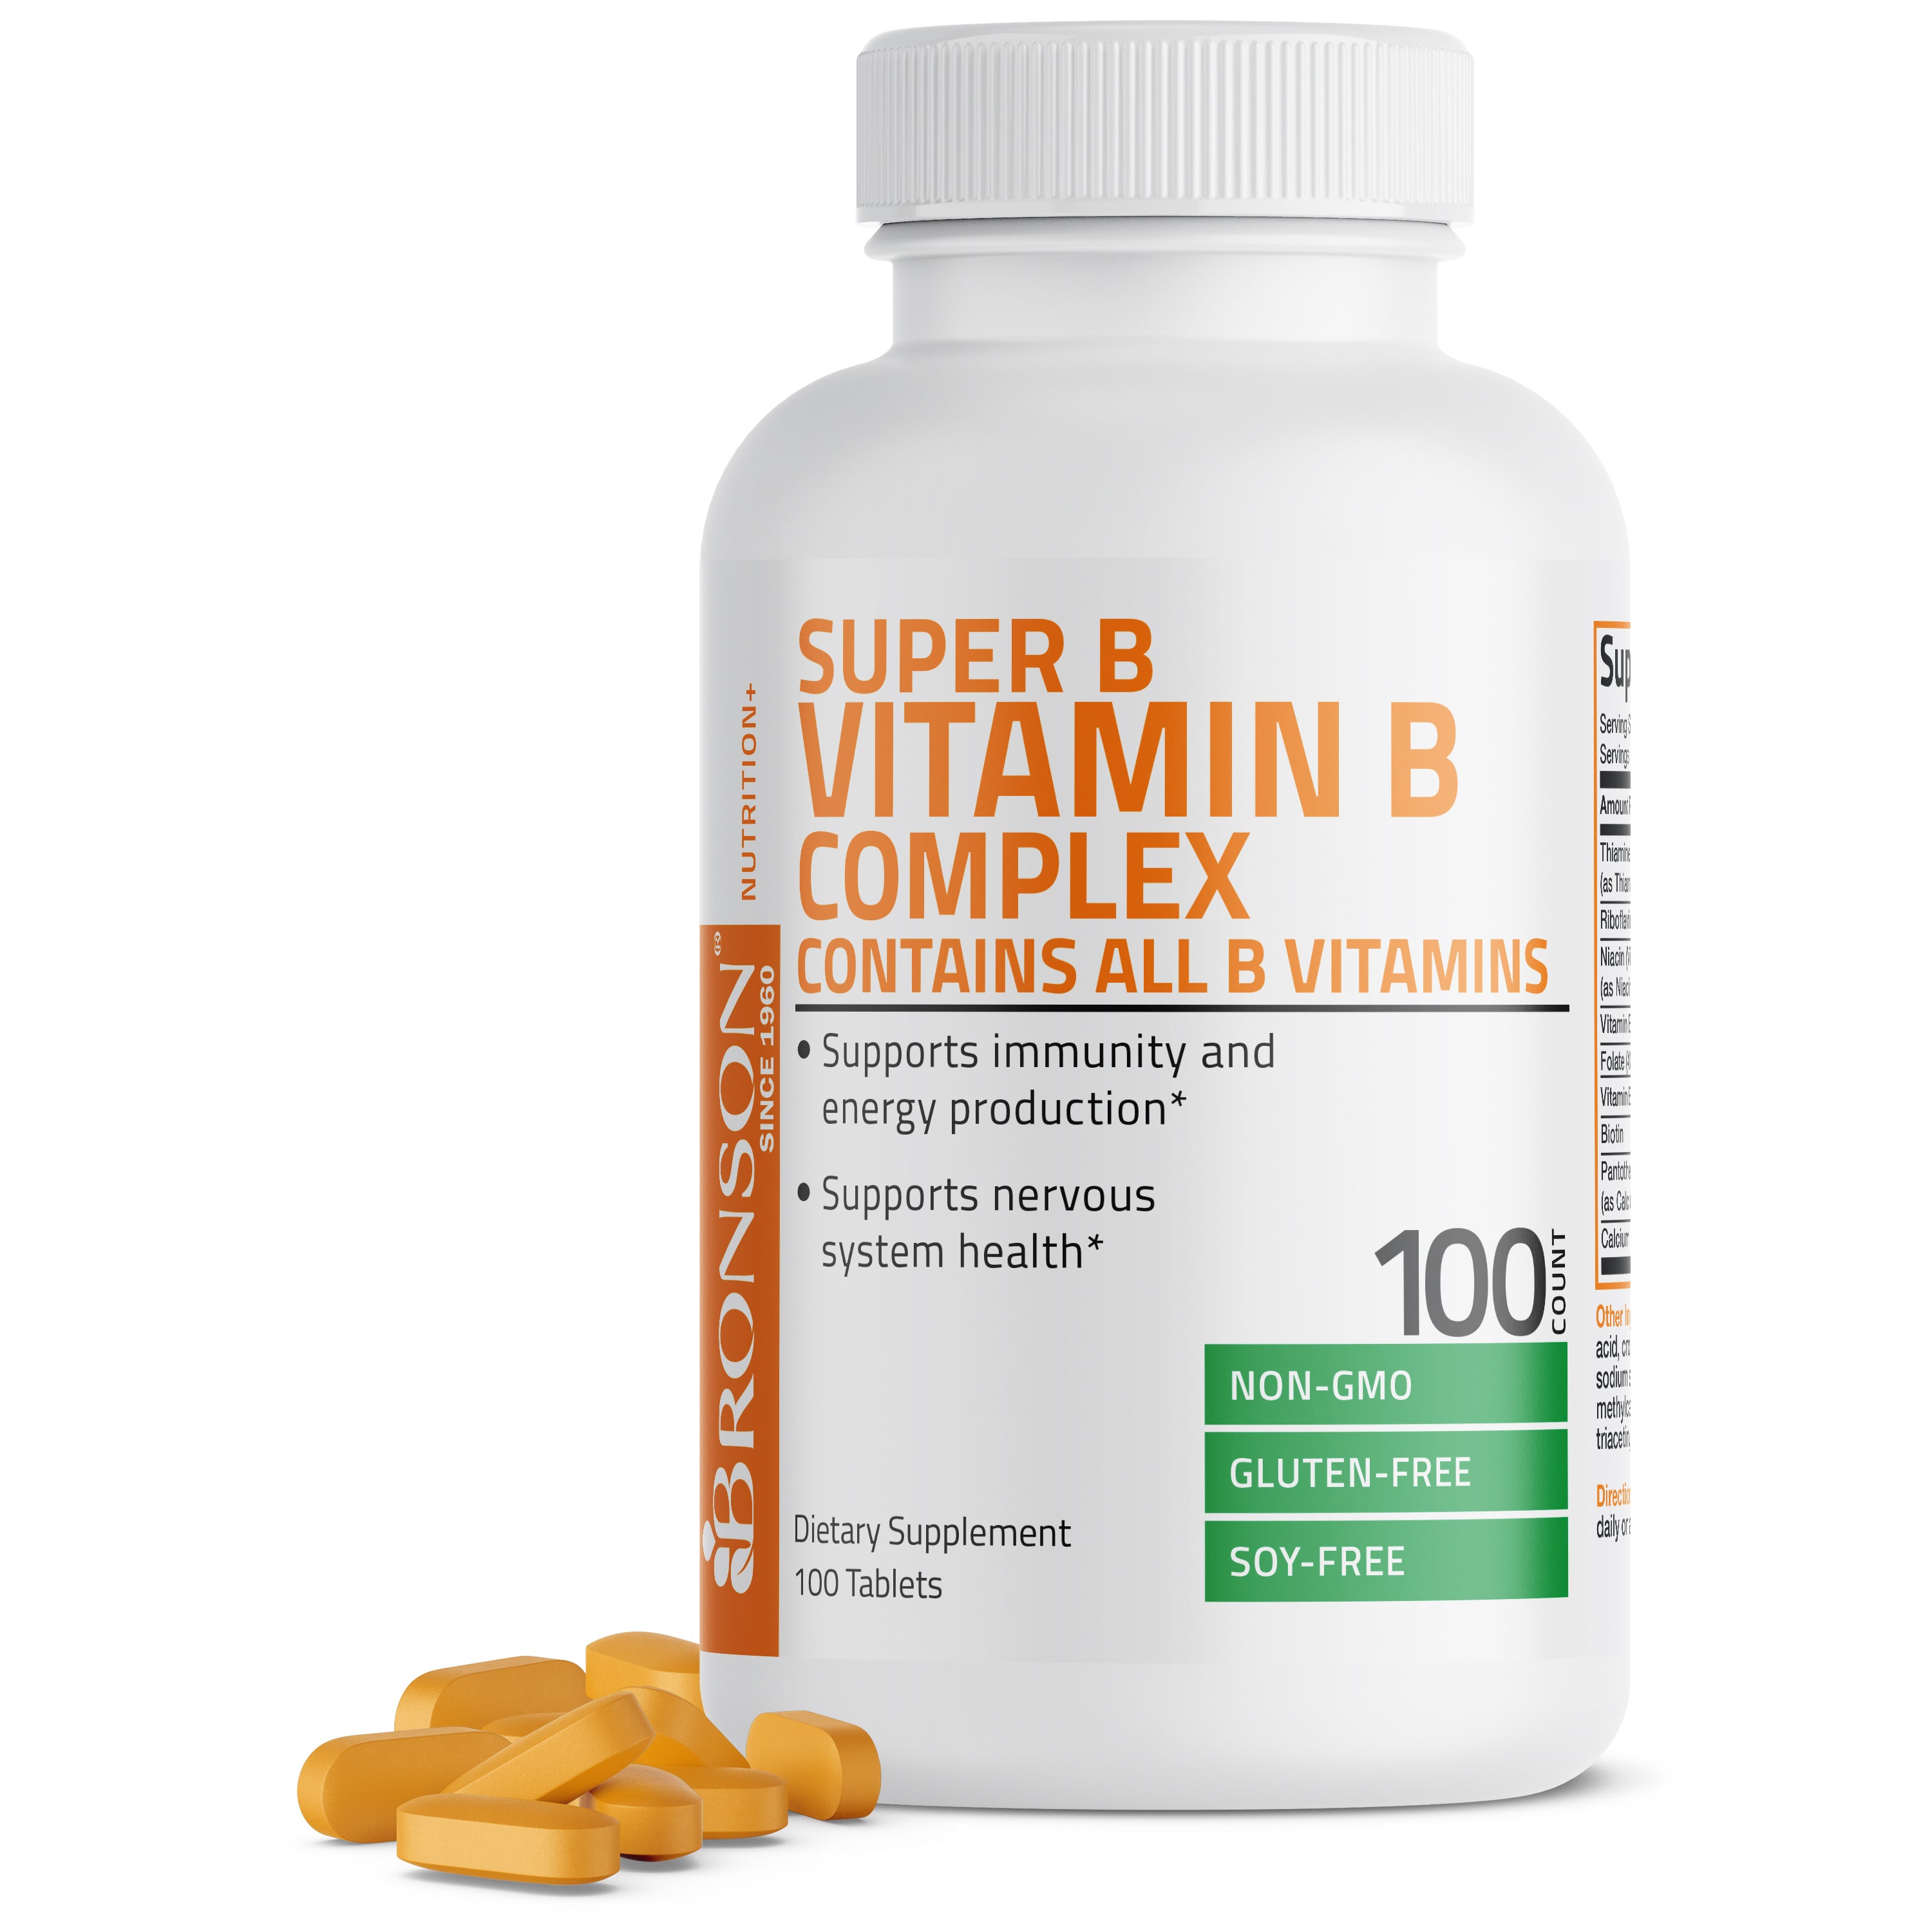 Super Vitamin B Complex view 1 of 4